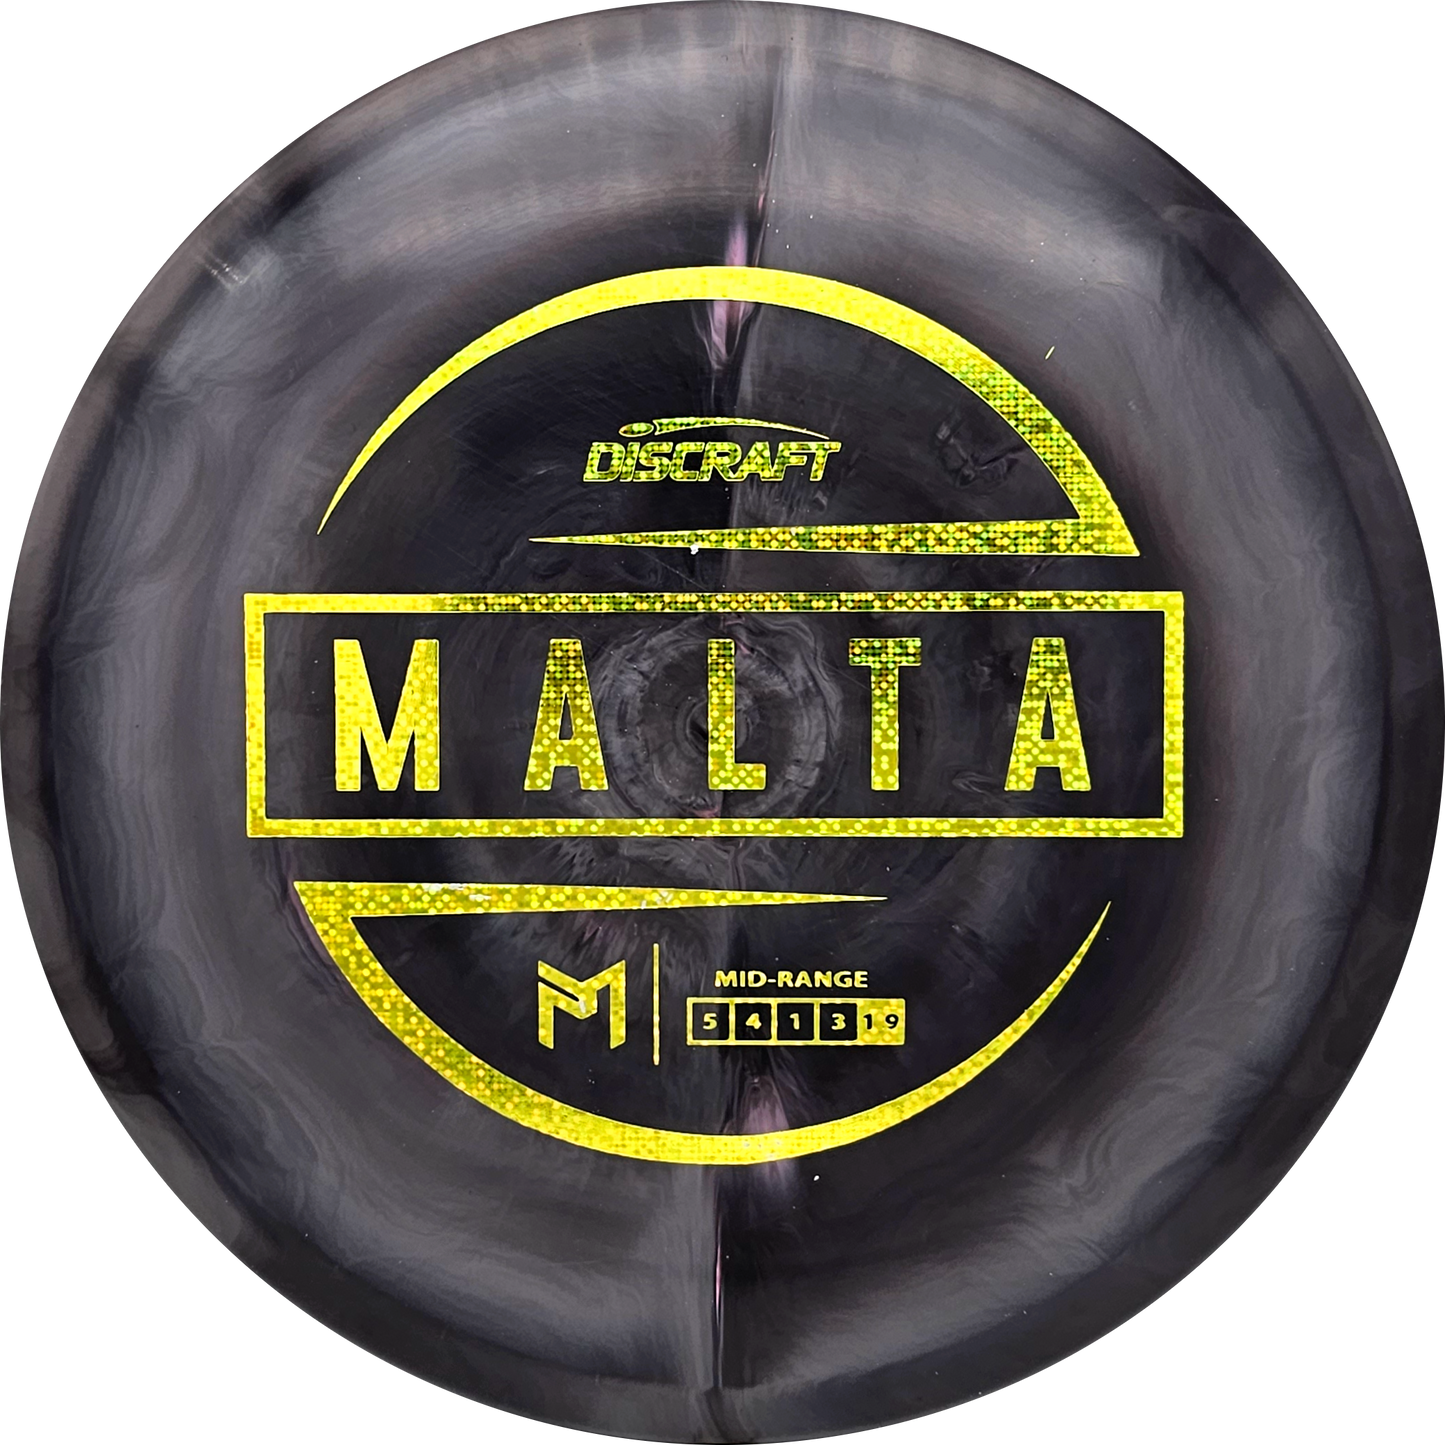 Discraft ESP Malta - Paul McBeth